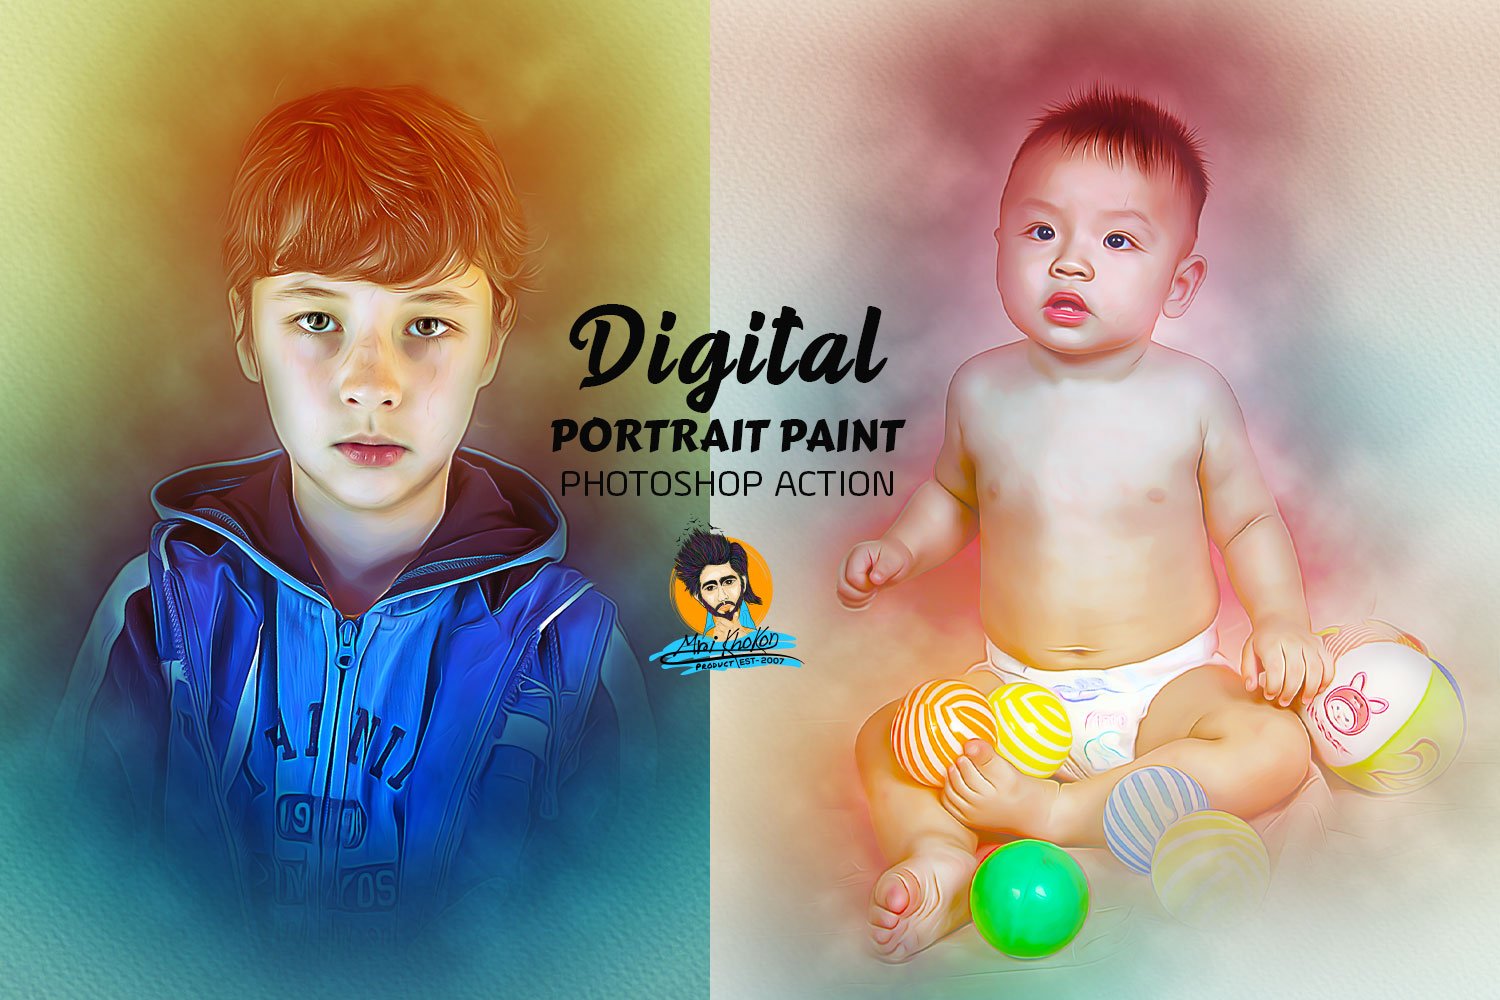 Digital Portrait Paintcover image.